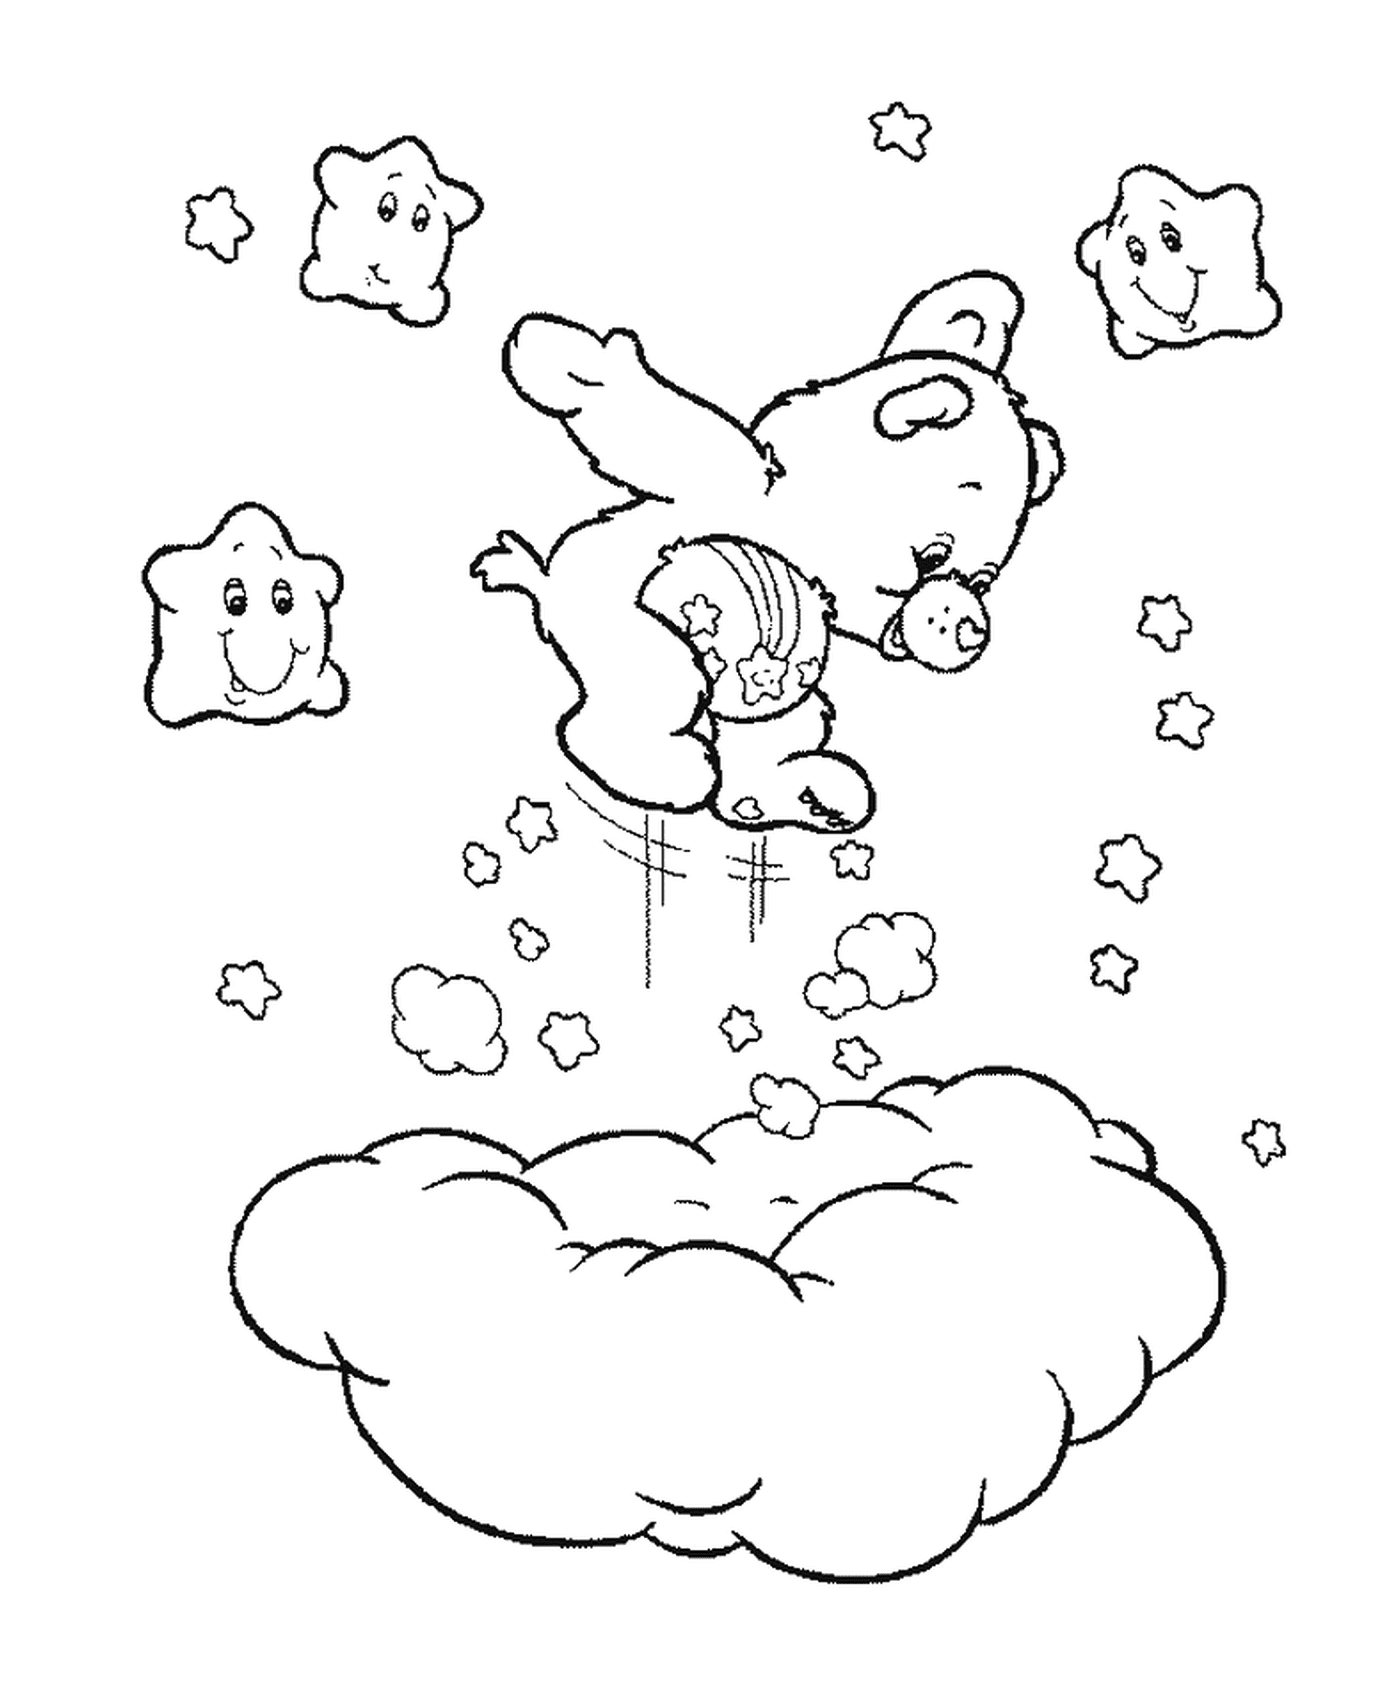  Un bisounour salta sopra una nuvola 